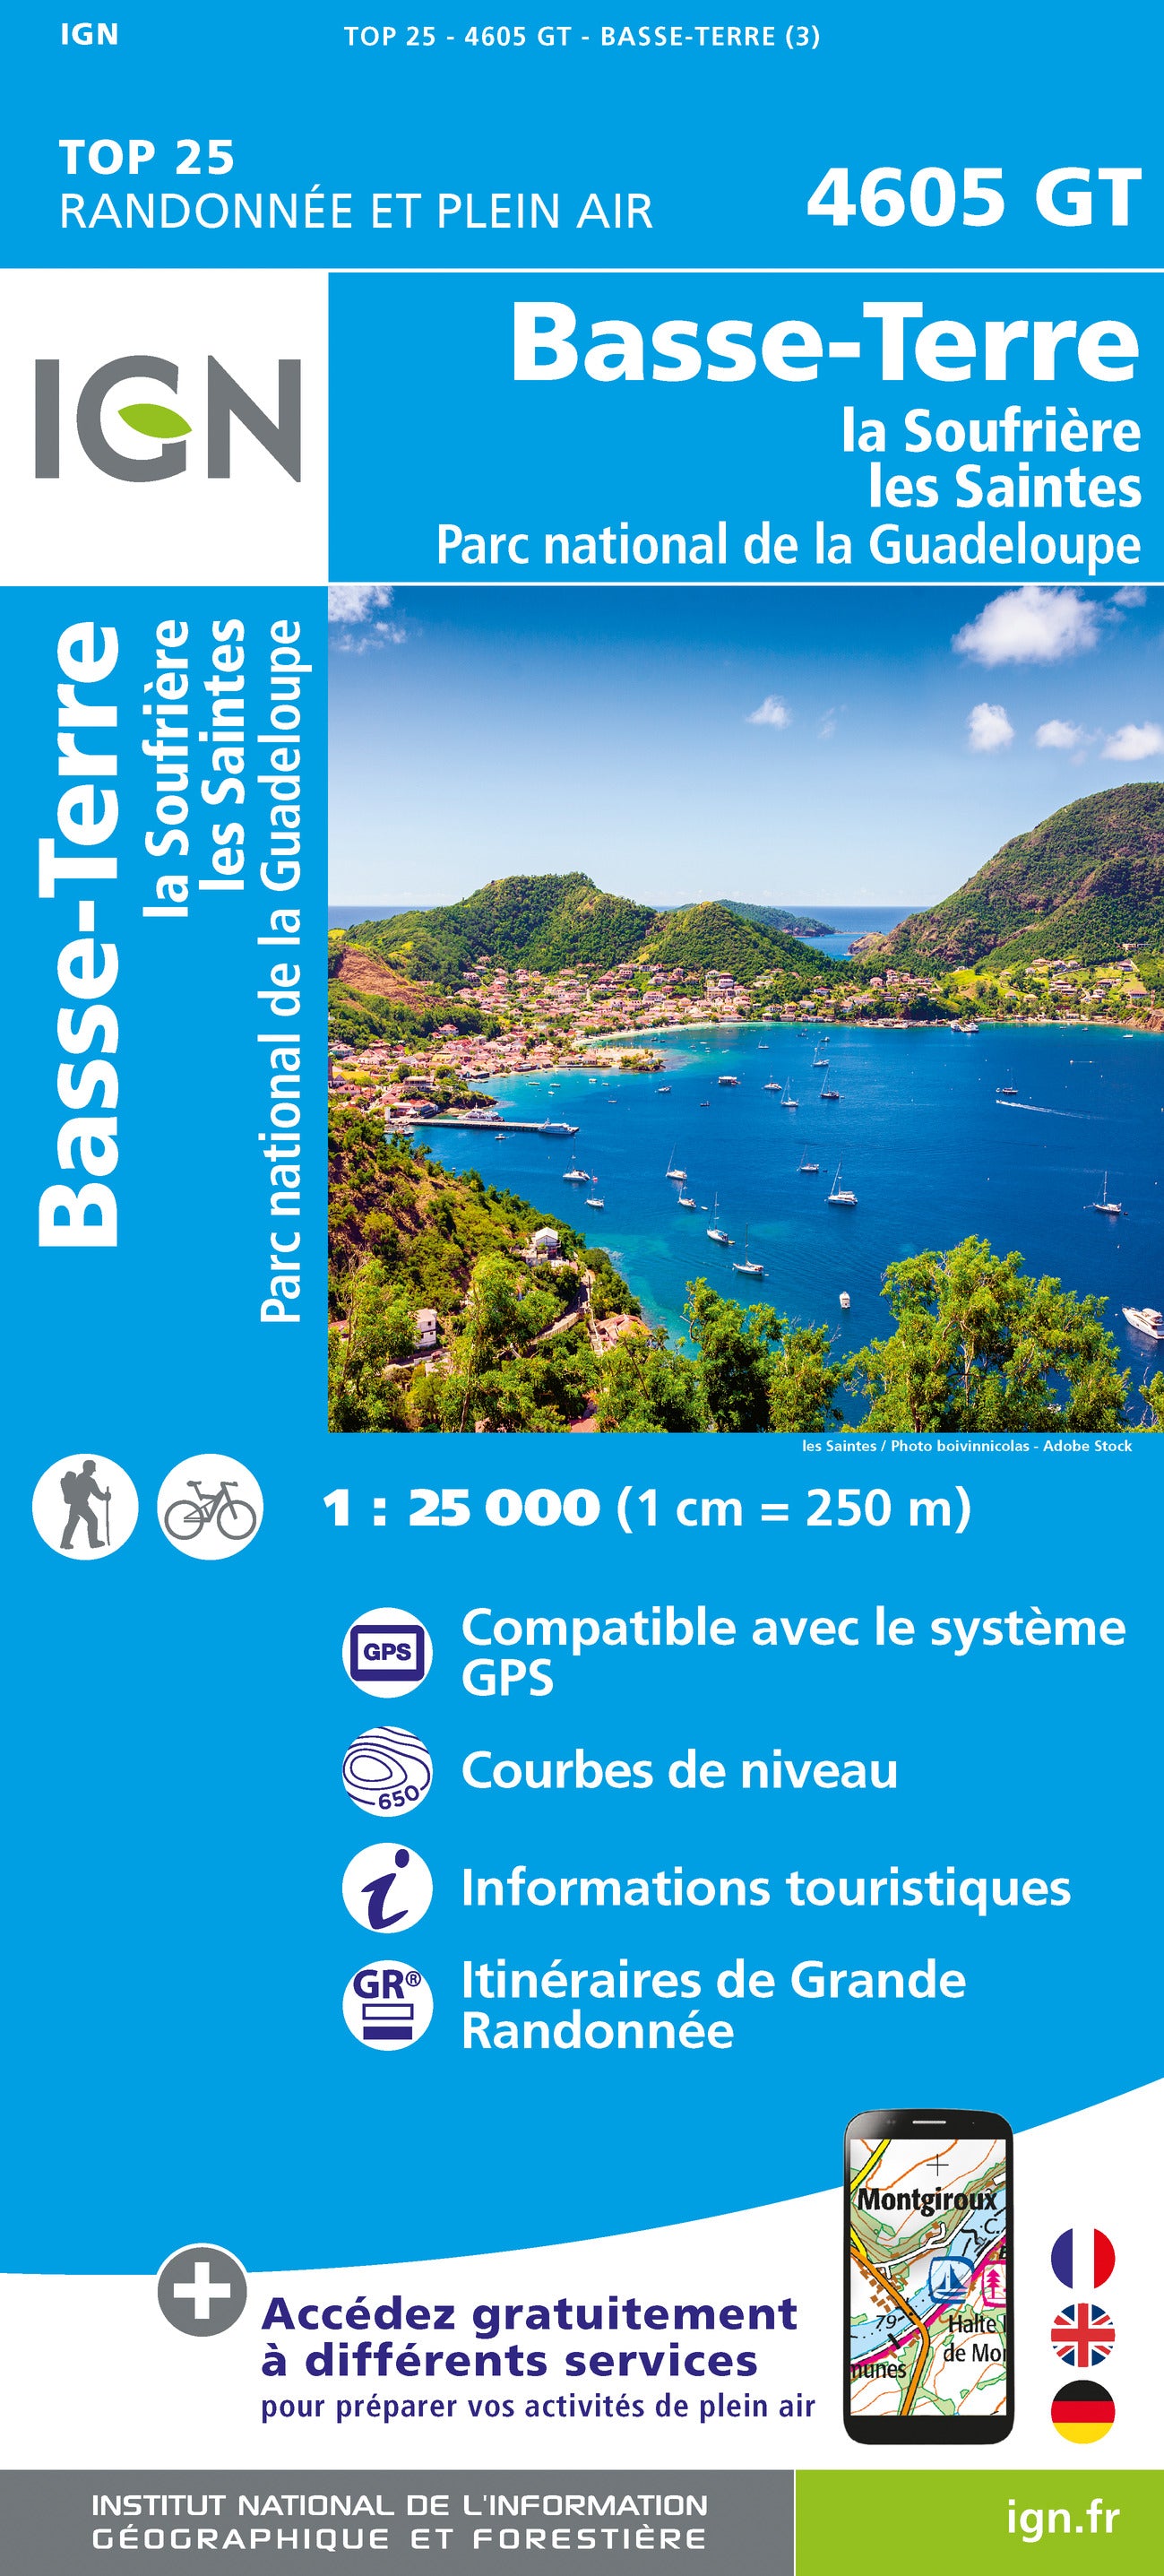 4605GT Basse-Terre / La Soufriere / Guadeloupe 1:25.000 Wanderkarte